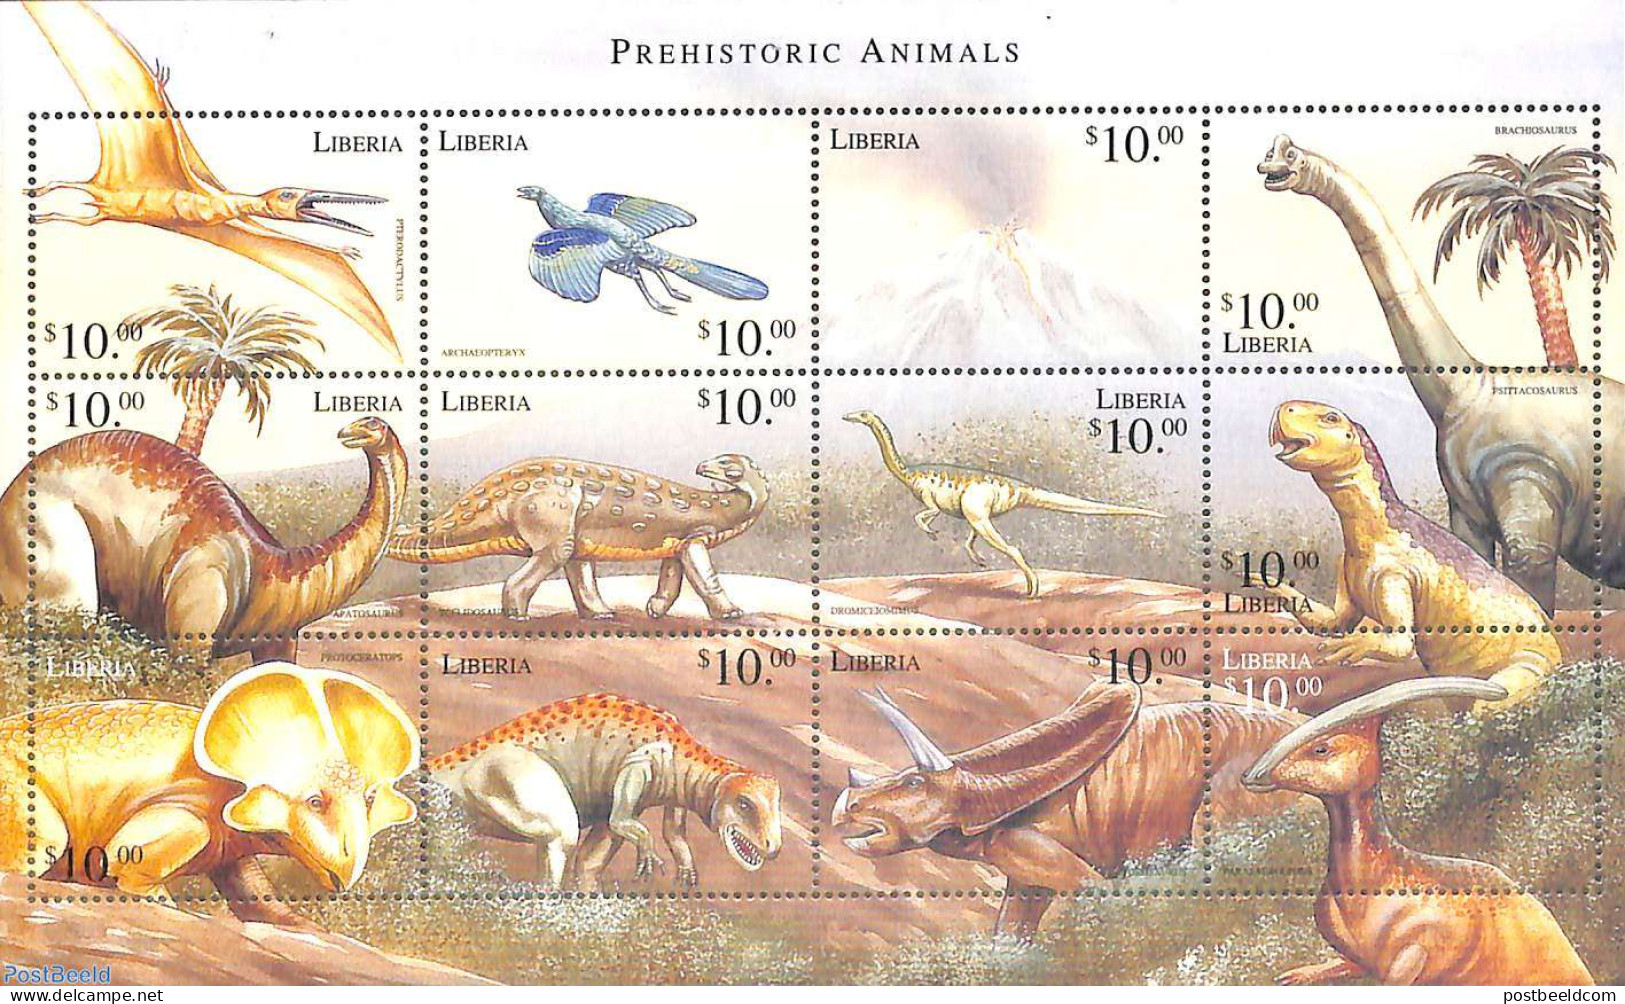 Liberia 1999 Preh. Animals 12v M/s, Mint NH, Nature - Prehistoric Animals - Prehistóricos